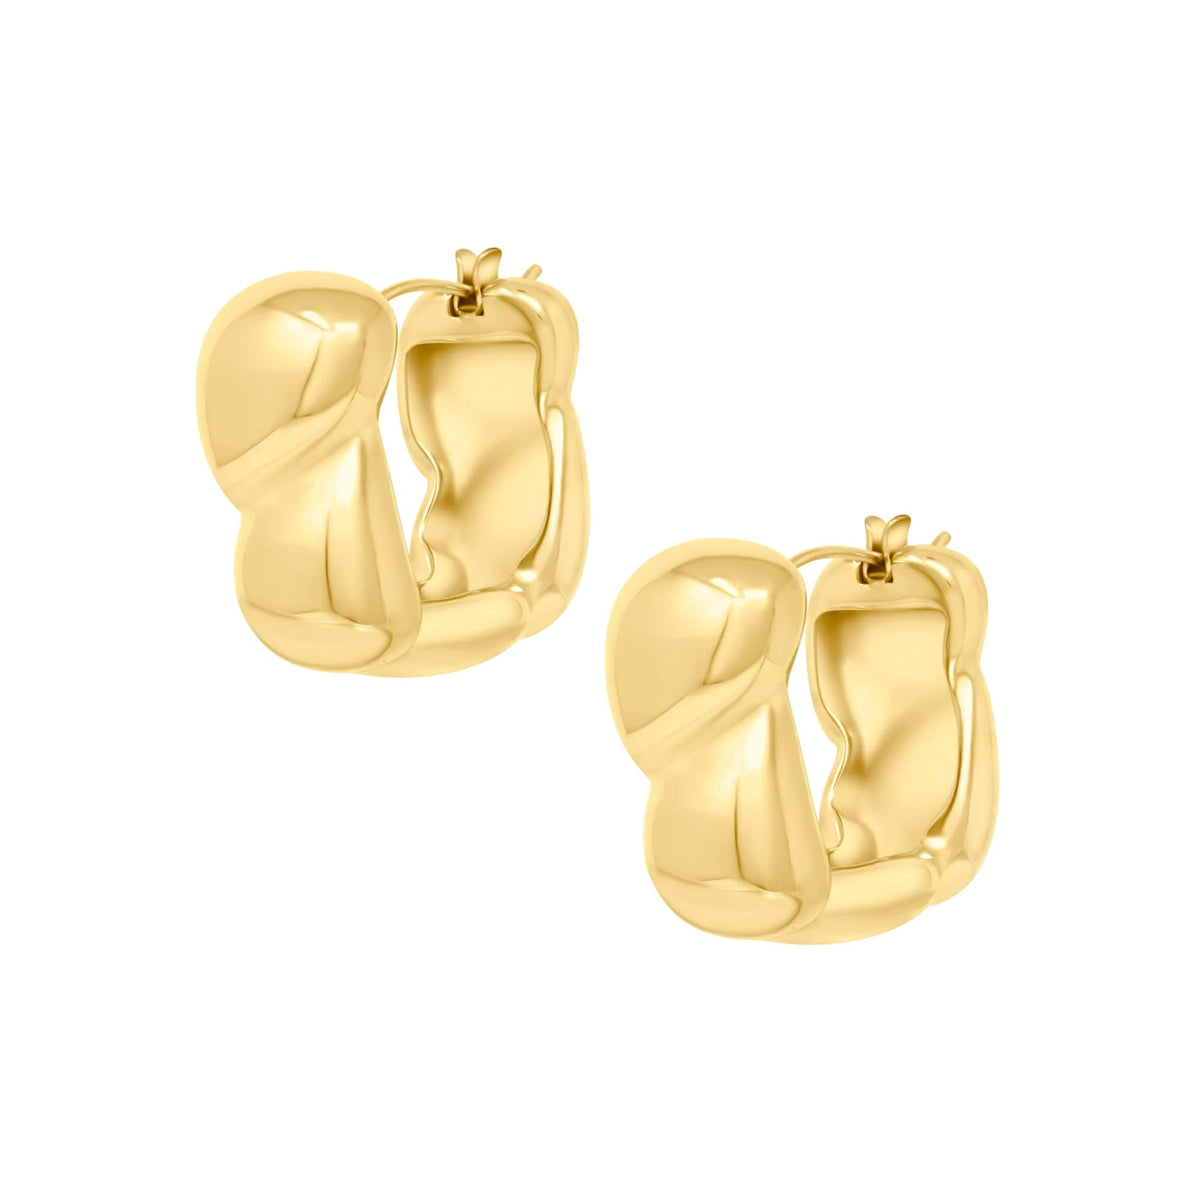 BohoMoon Stainless Steel Rylie Hoop Earrings Gold